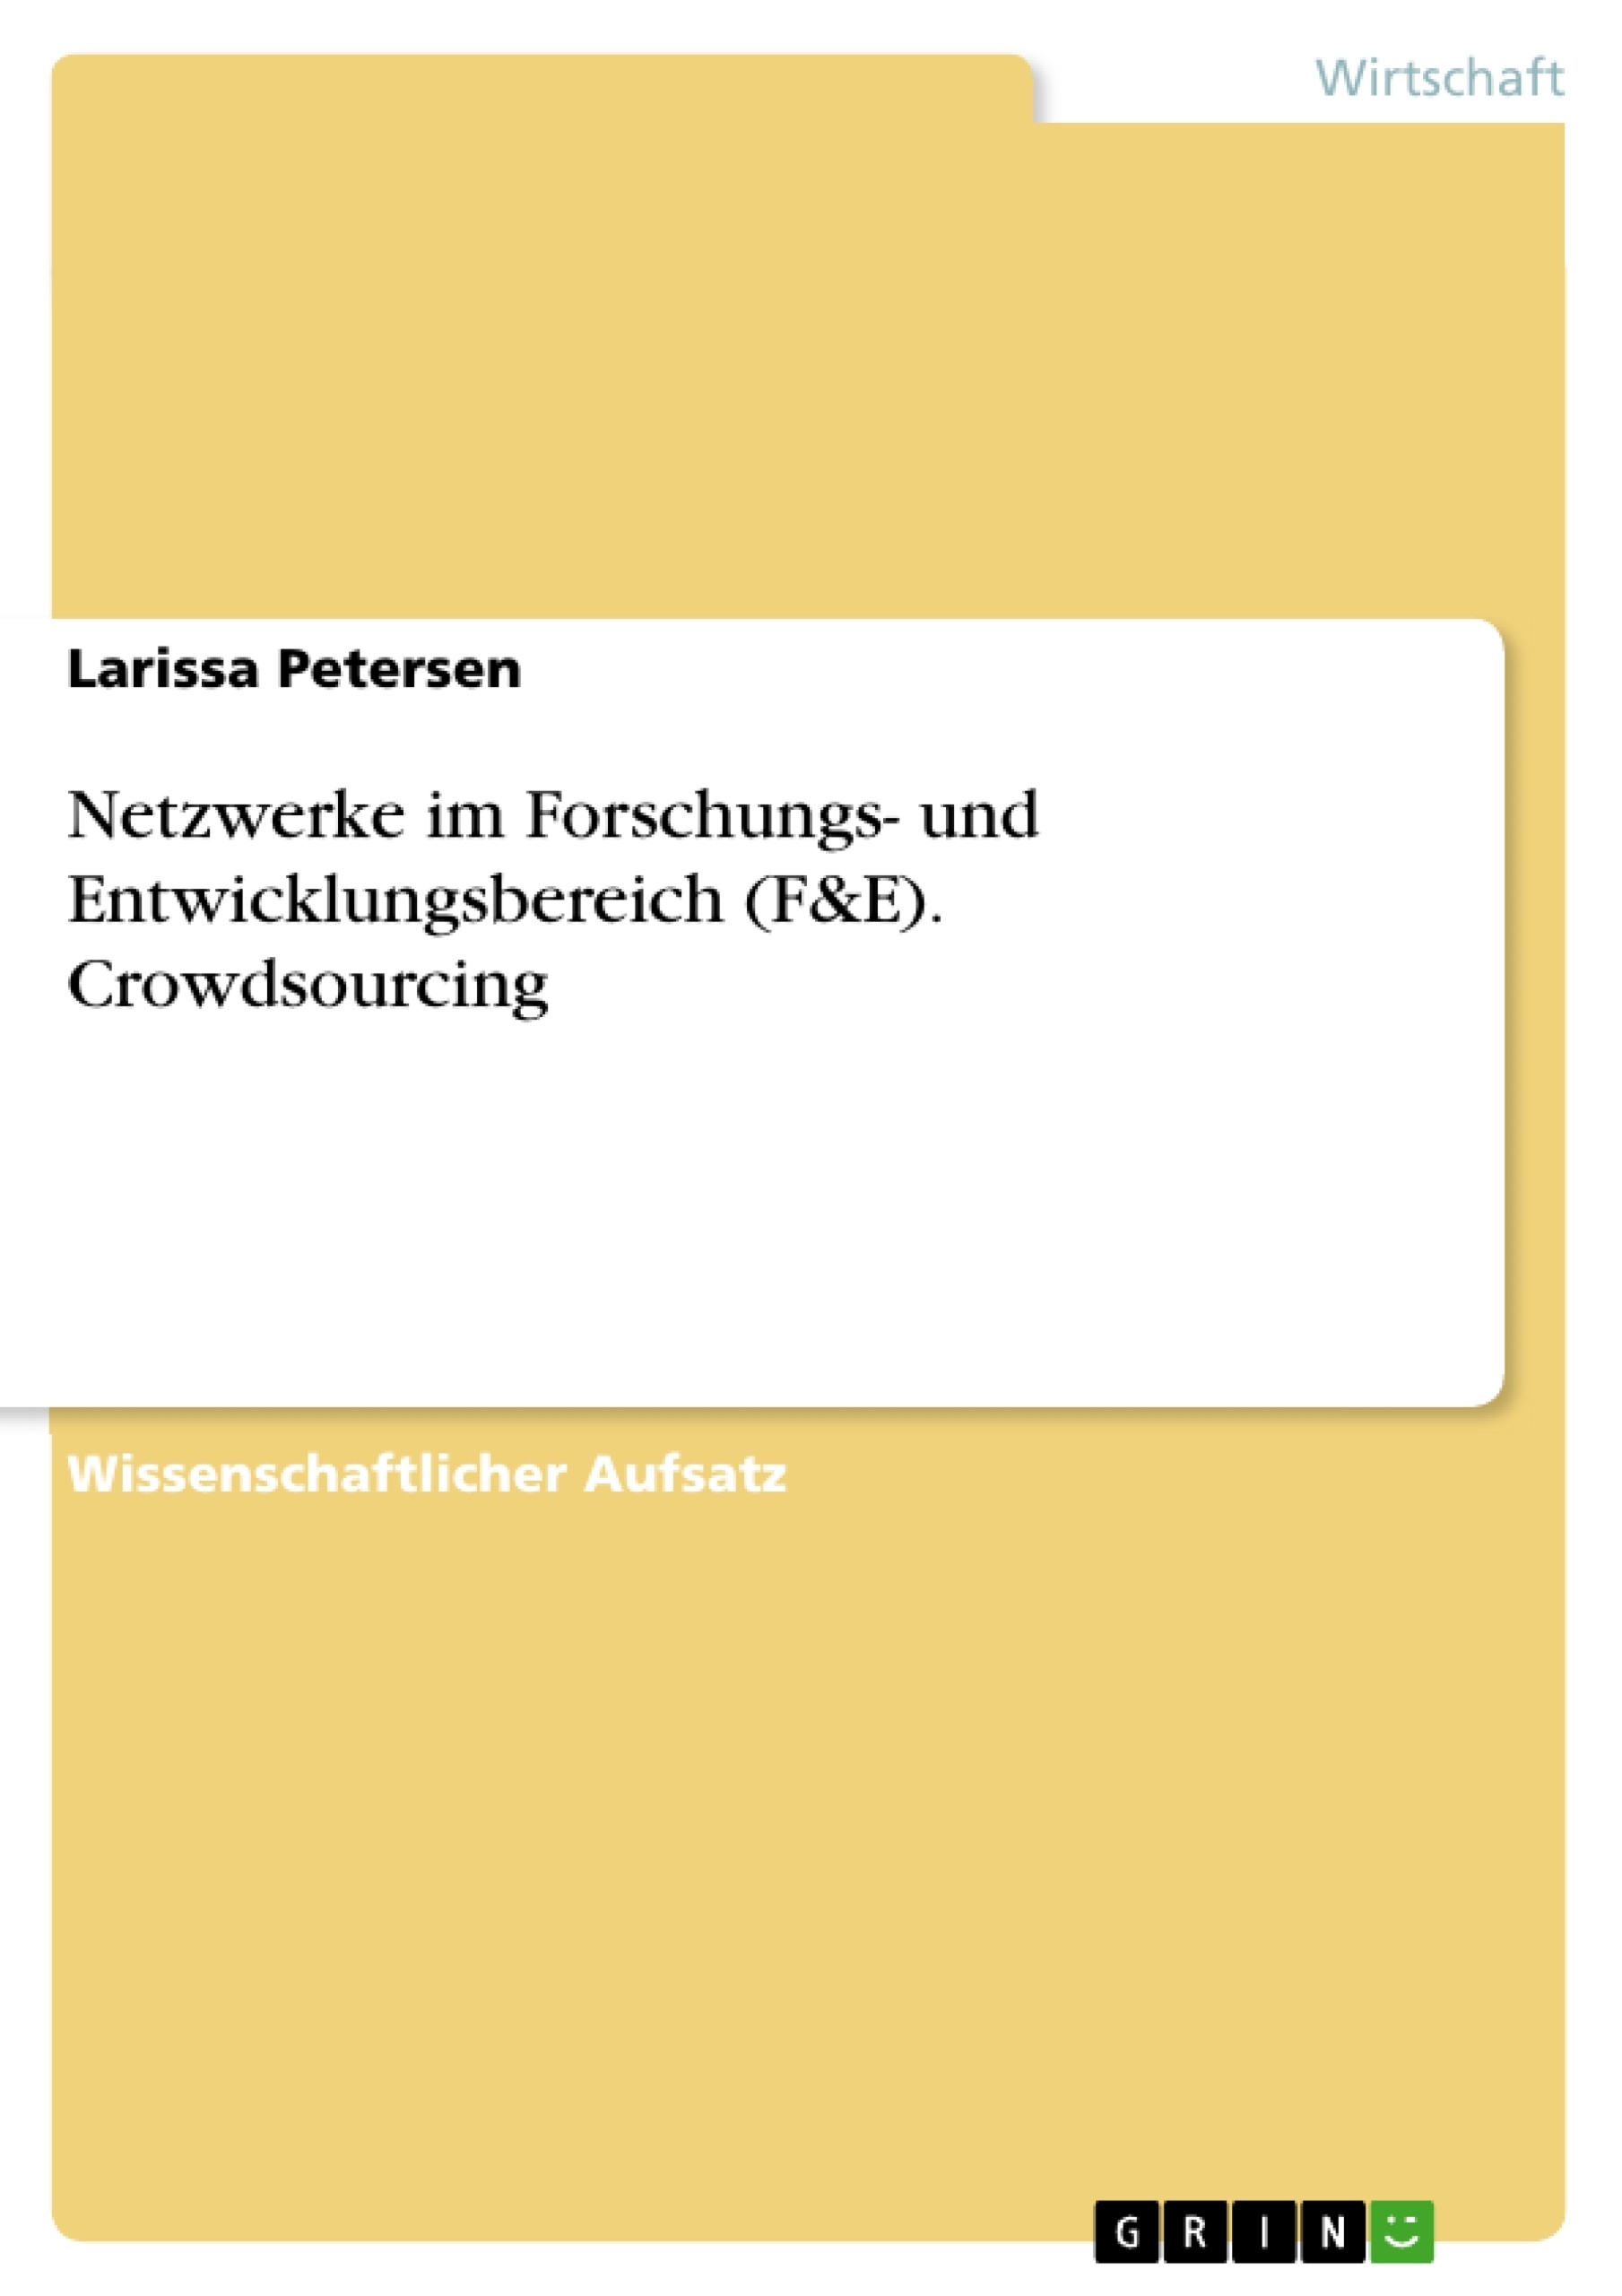 Title: Netzwerke im Forschungs- und Entwicklungsbereich (F&E). Crowdsourcing